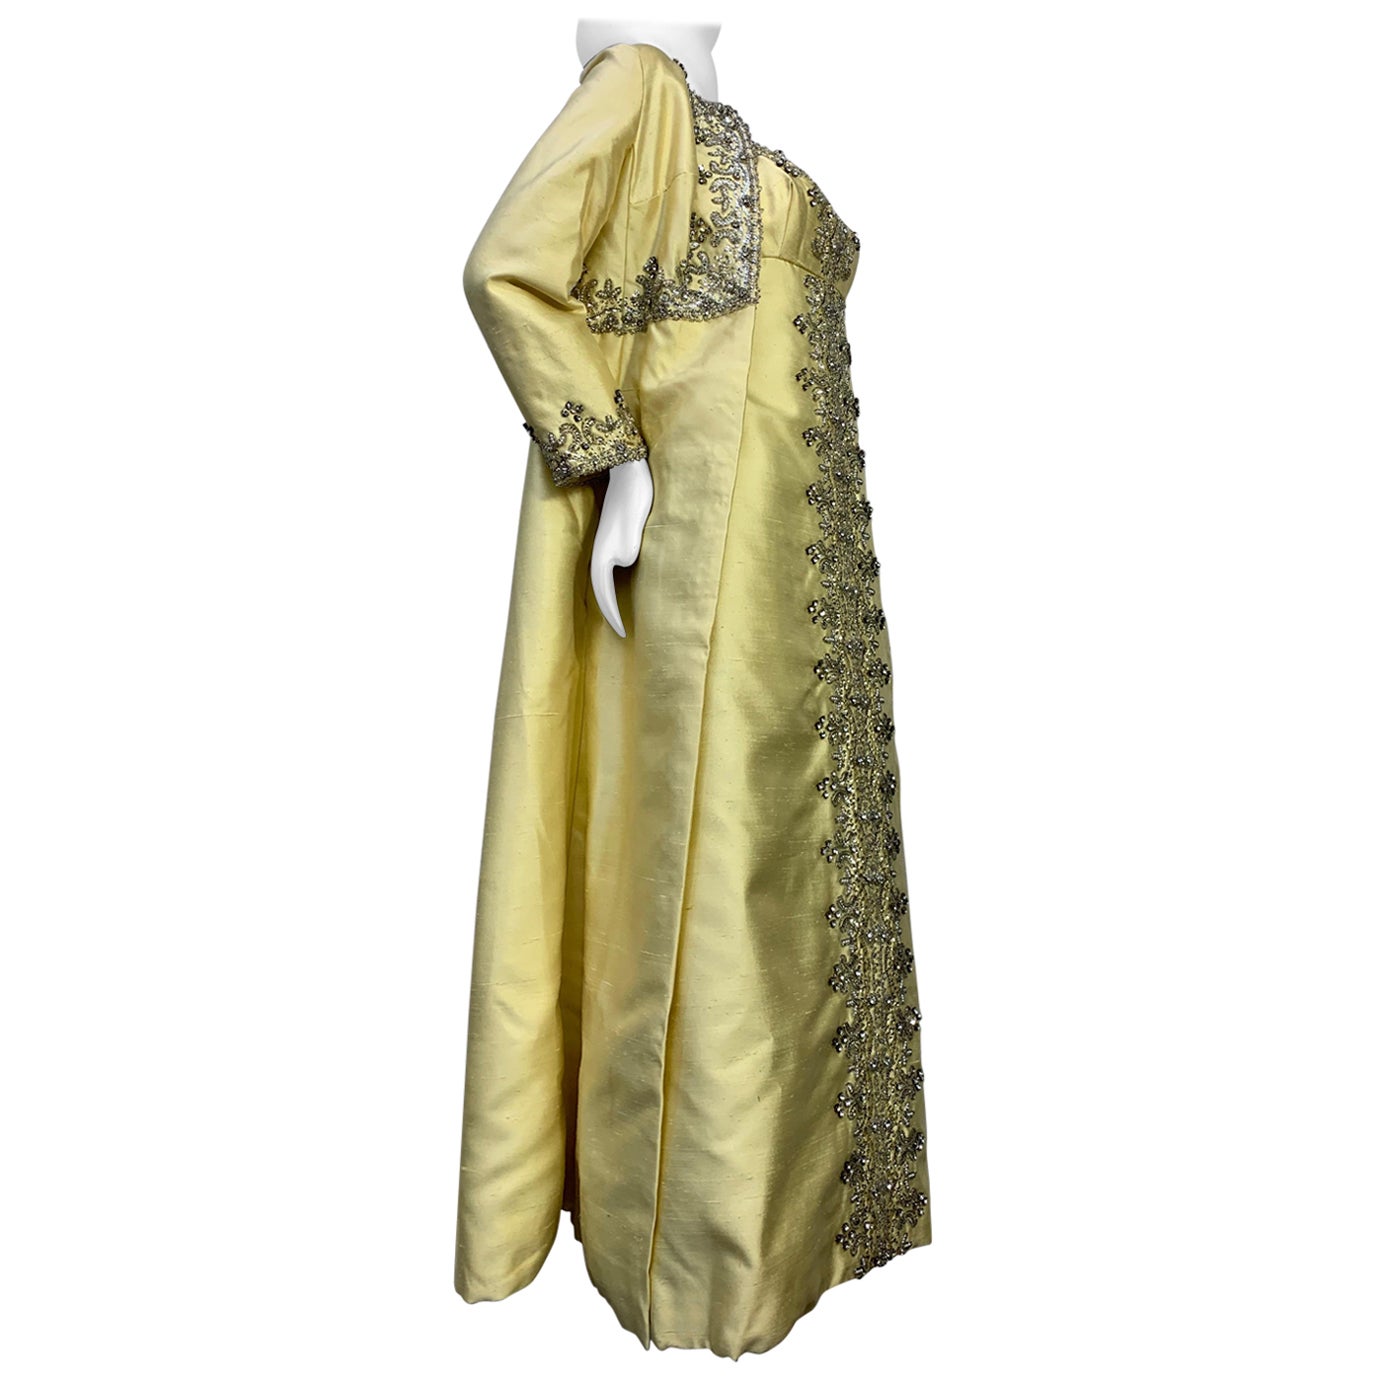 Bernetti - Ensemble manteau et robe opéra en soie citrine avec perles extravagantes, années 1960 